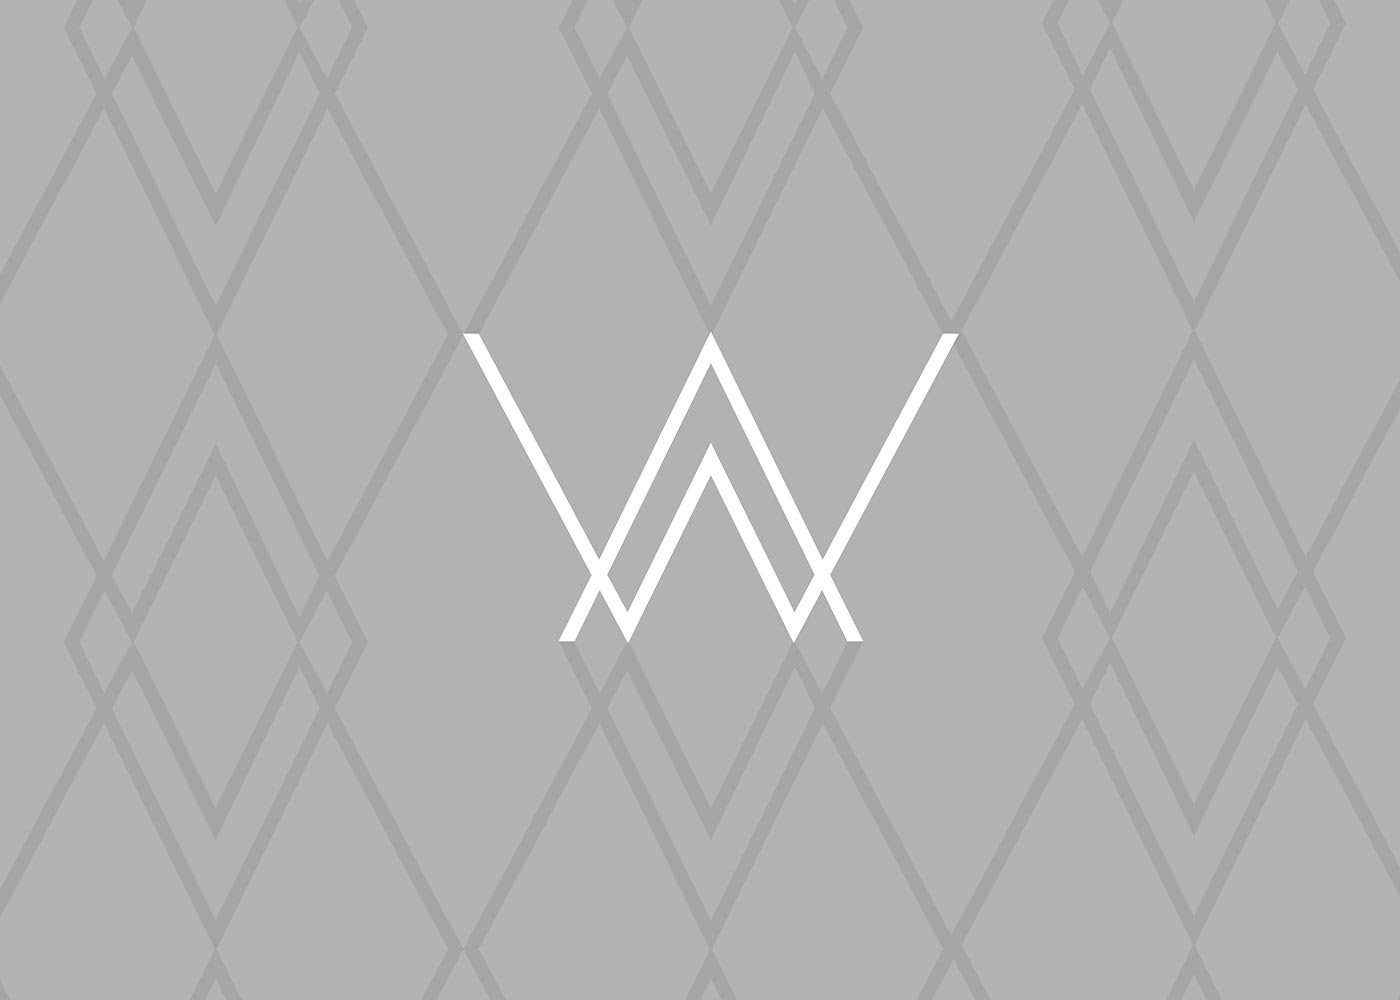 AW minimalist logo and brand pattern